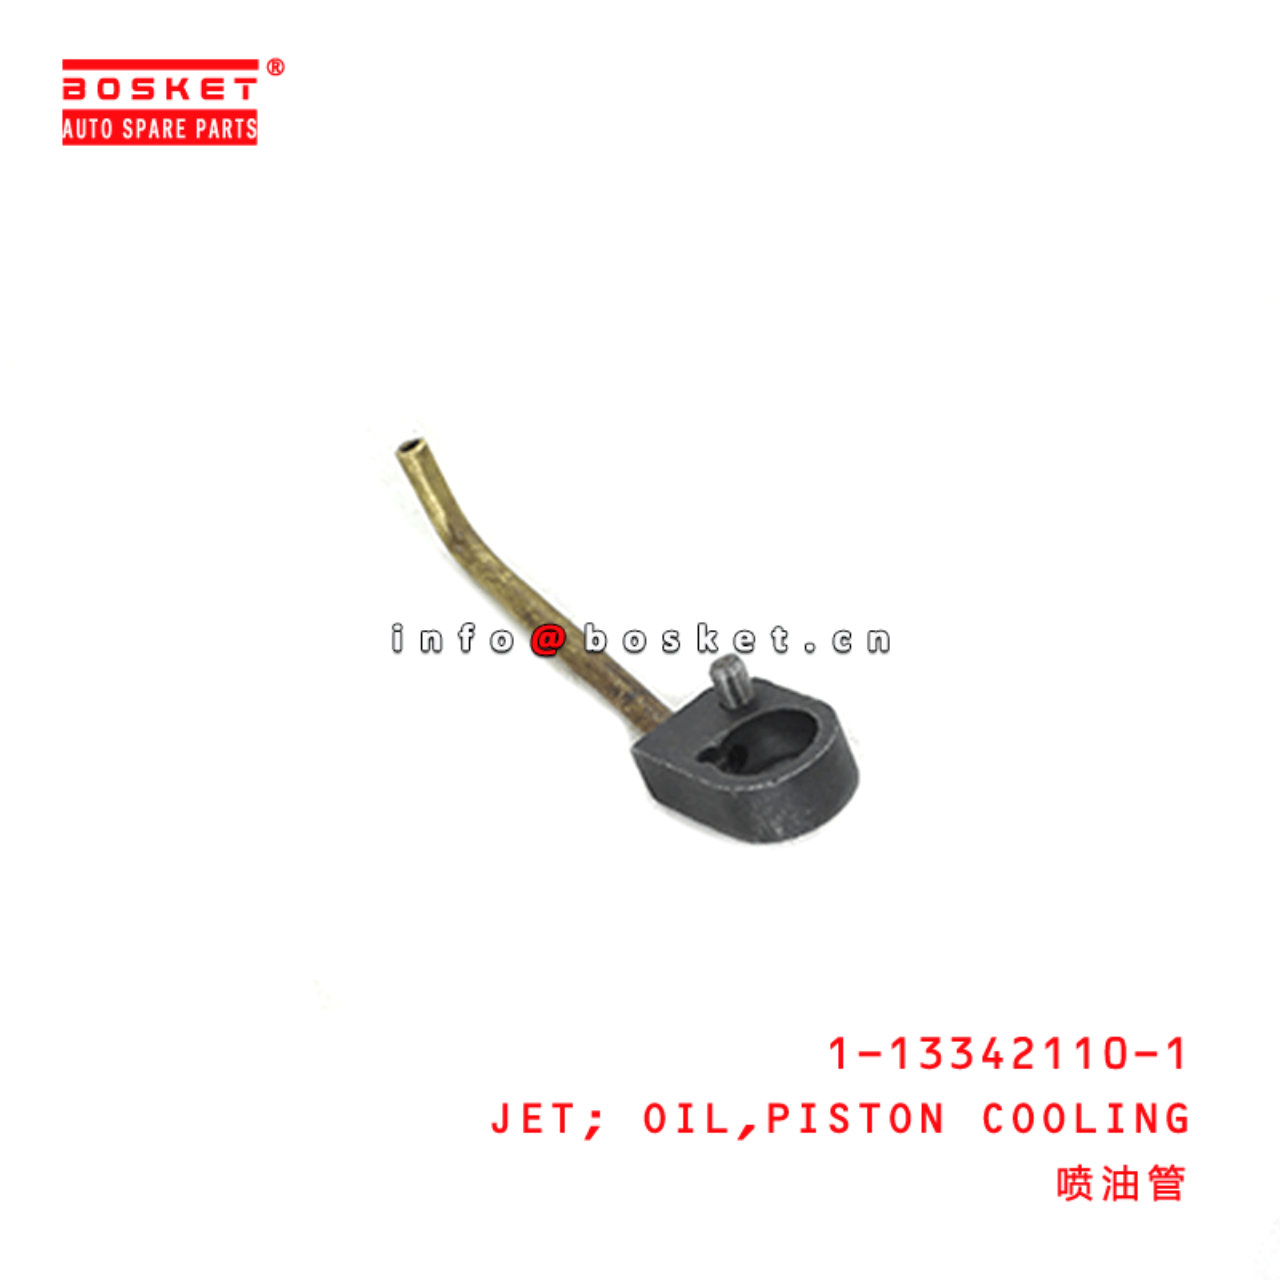  1-13342110-1 Piston Cooling Oil Jet 1133421101 Suitable for ISUZU FSR12 6BG1